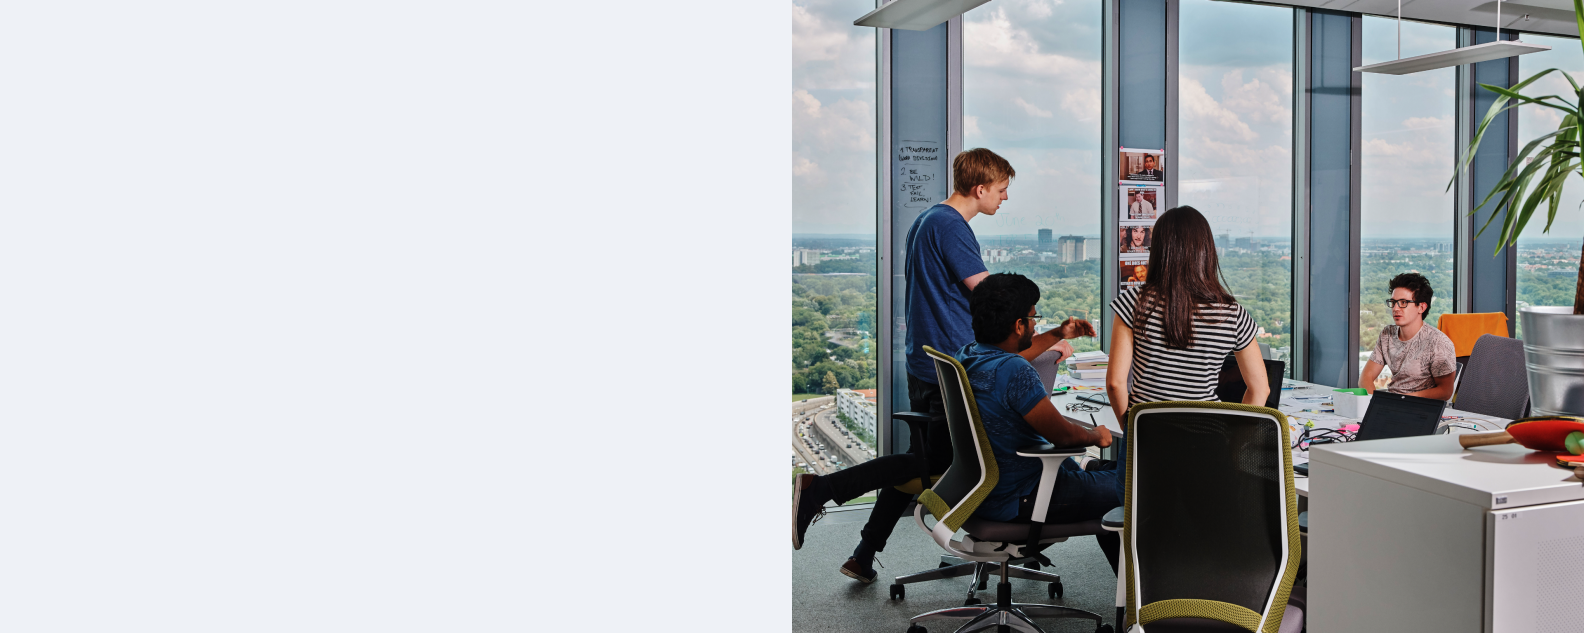 Varios empleados jóvenes mantienen un diálogo en una oficina en un rascacielos